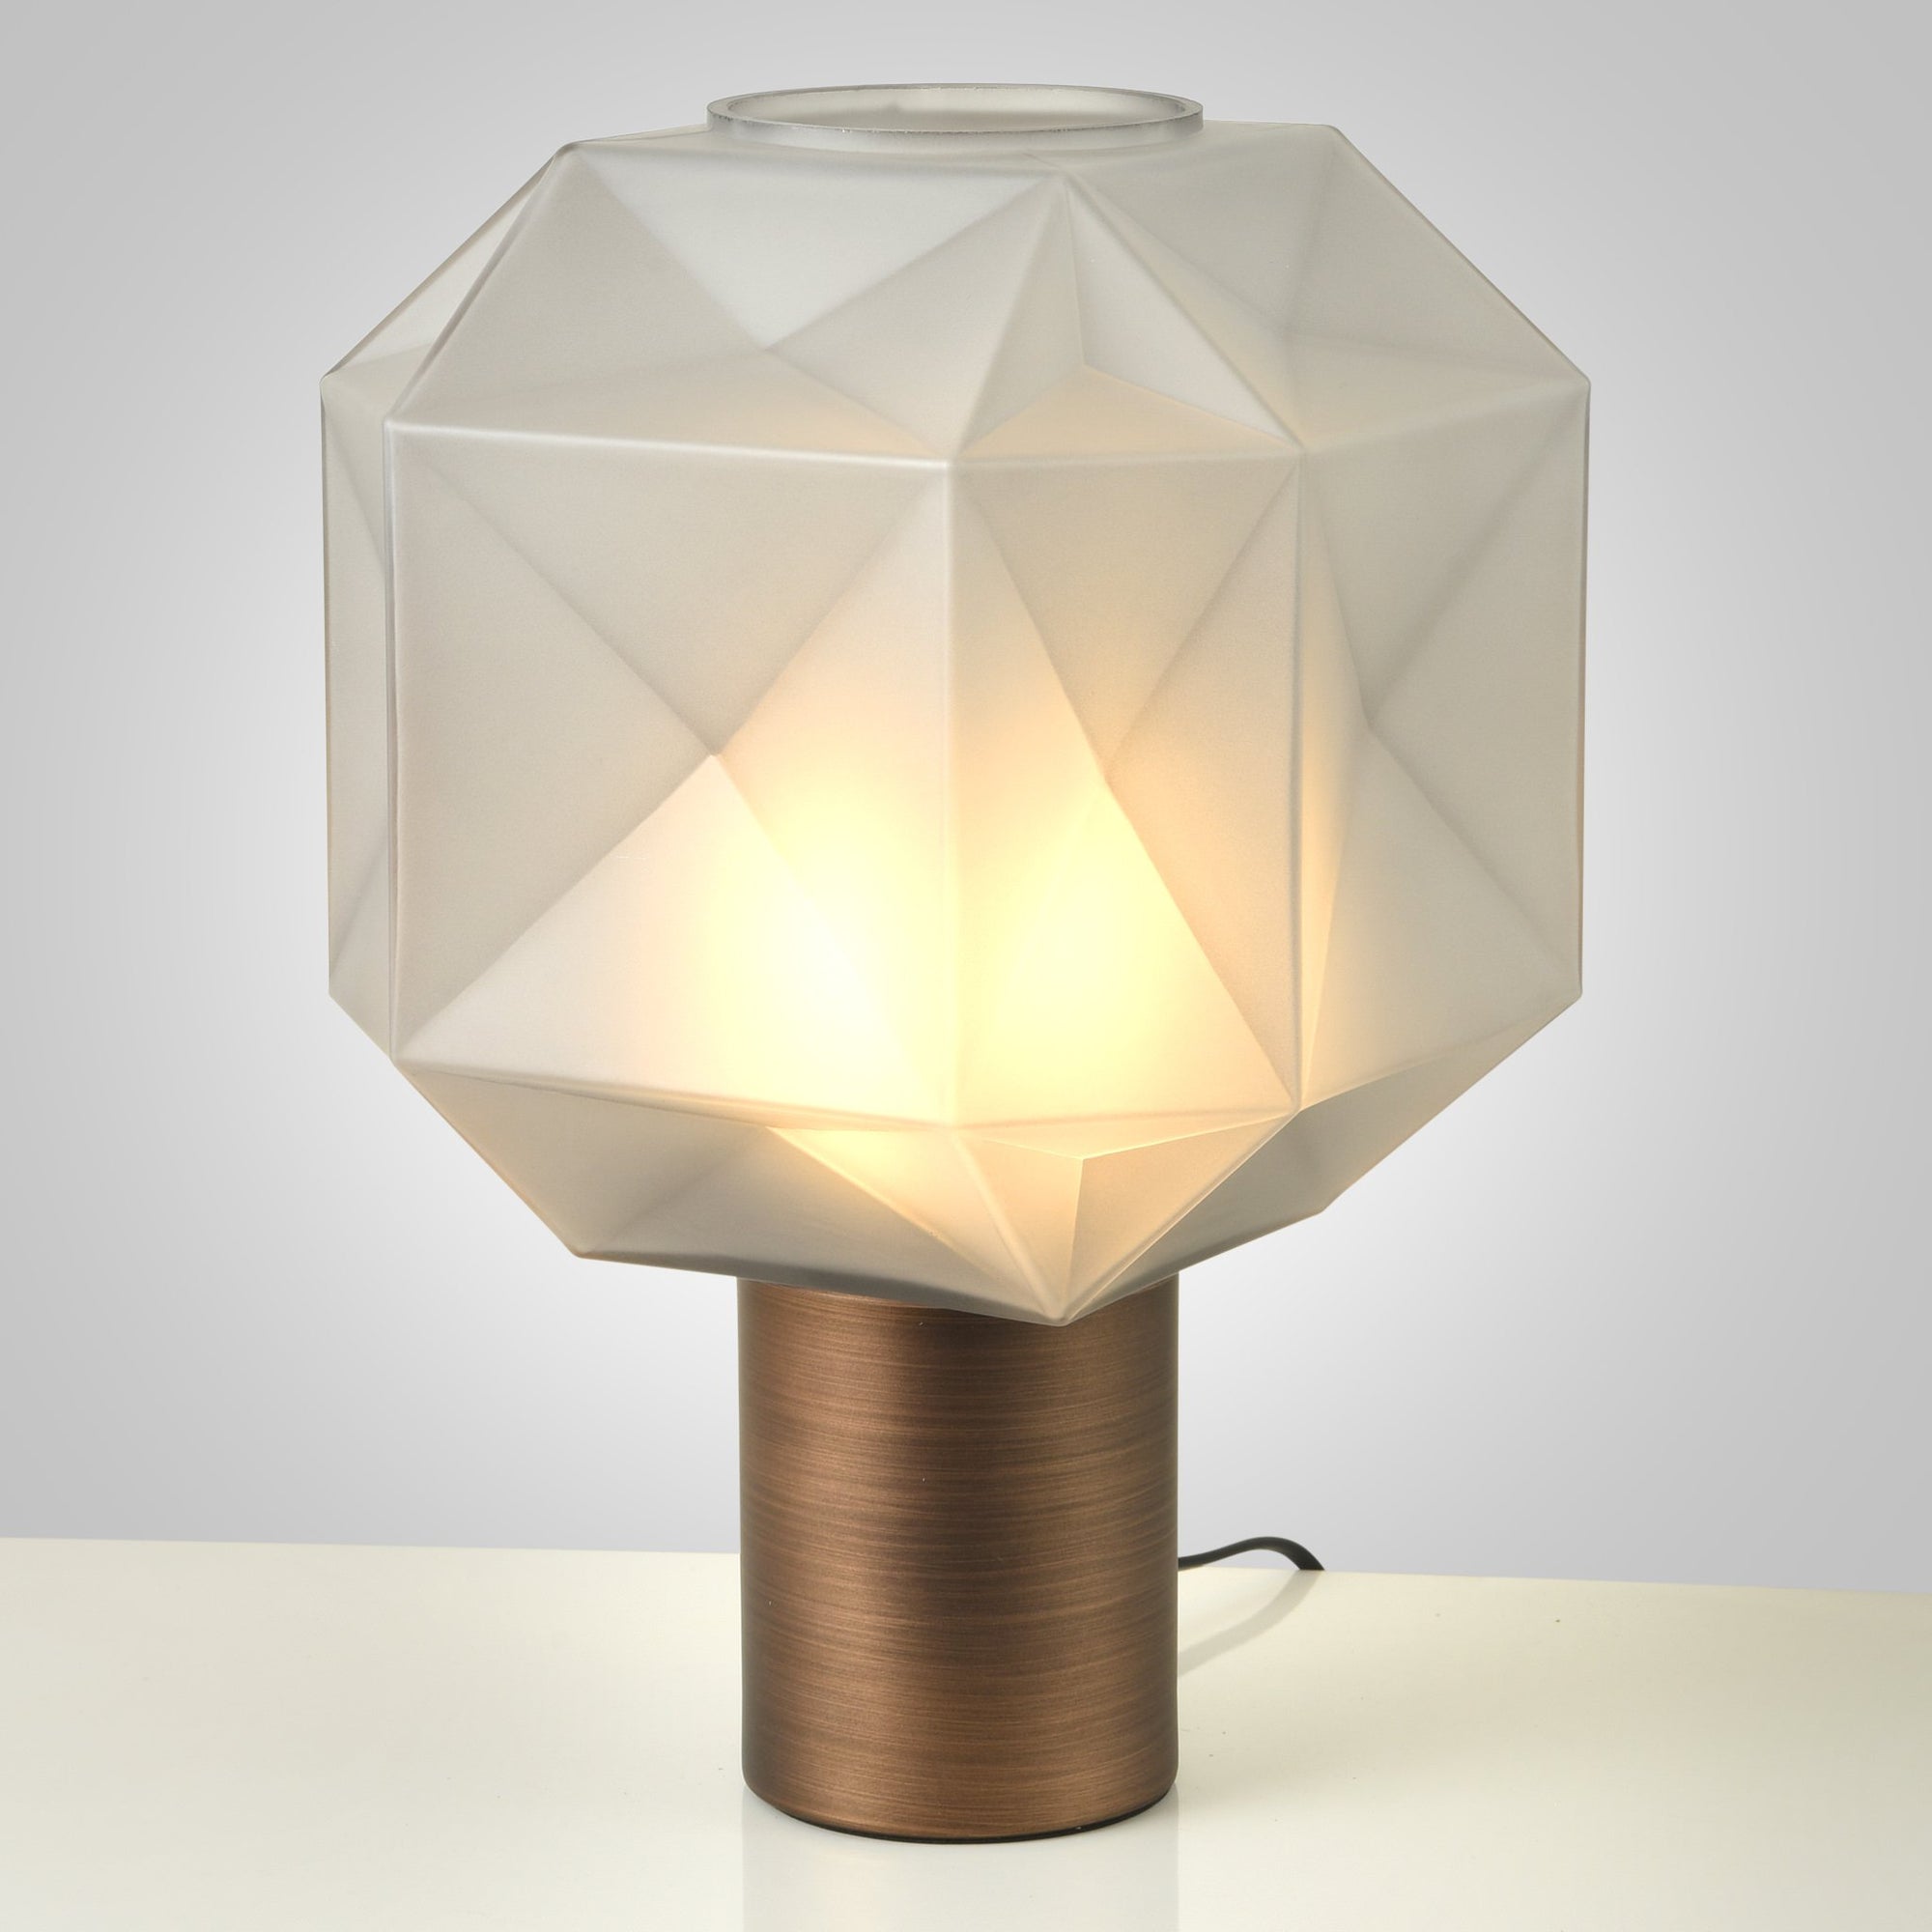 Buy Love Nest Table Lamp Online